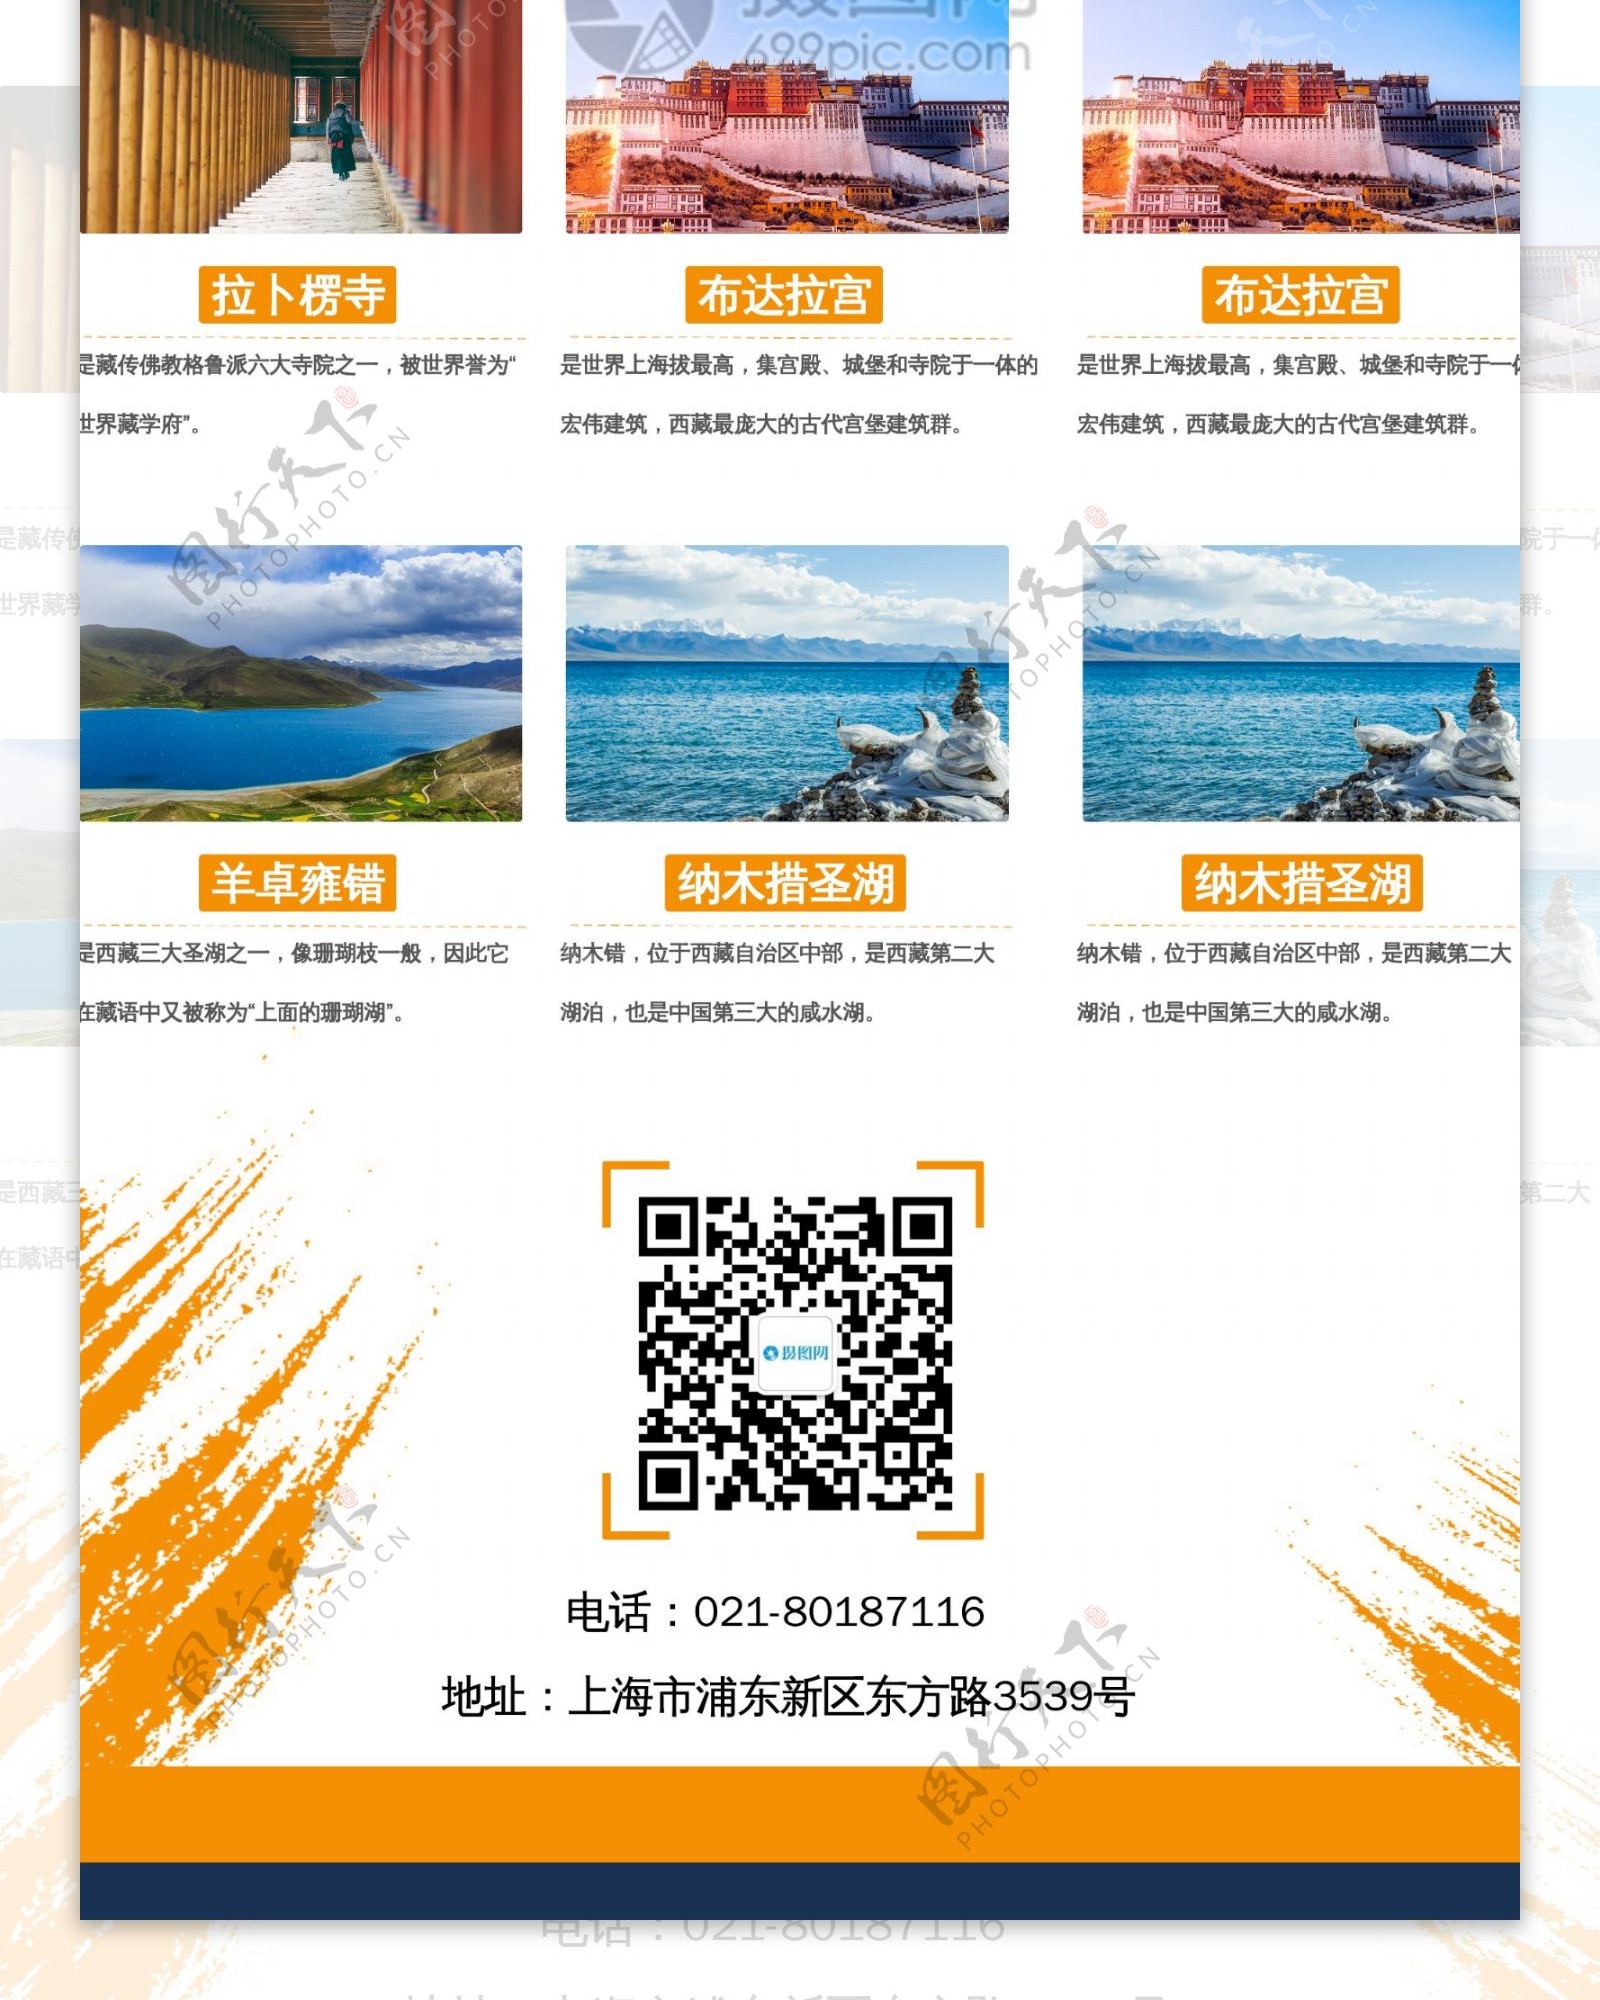 西藏旅游宣传x展架